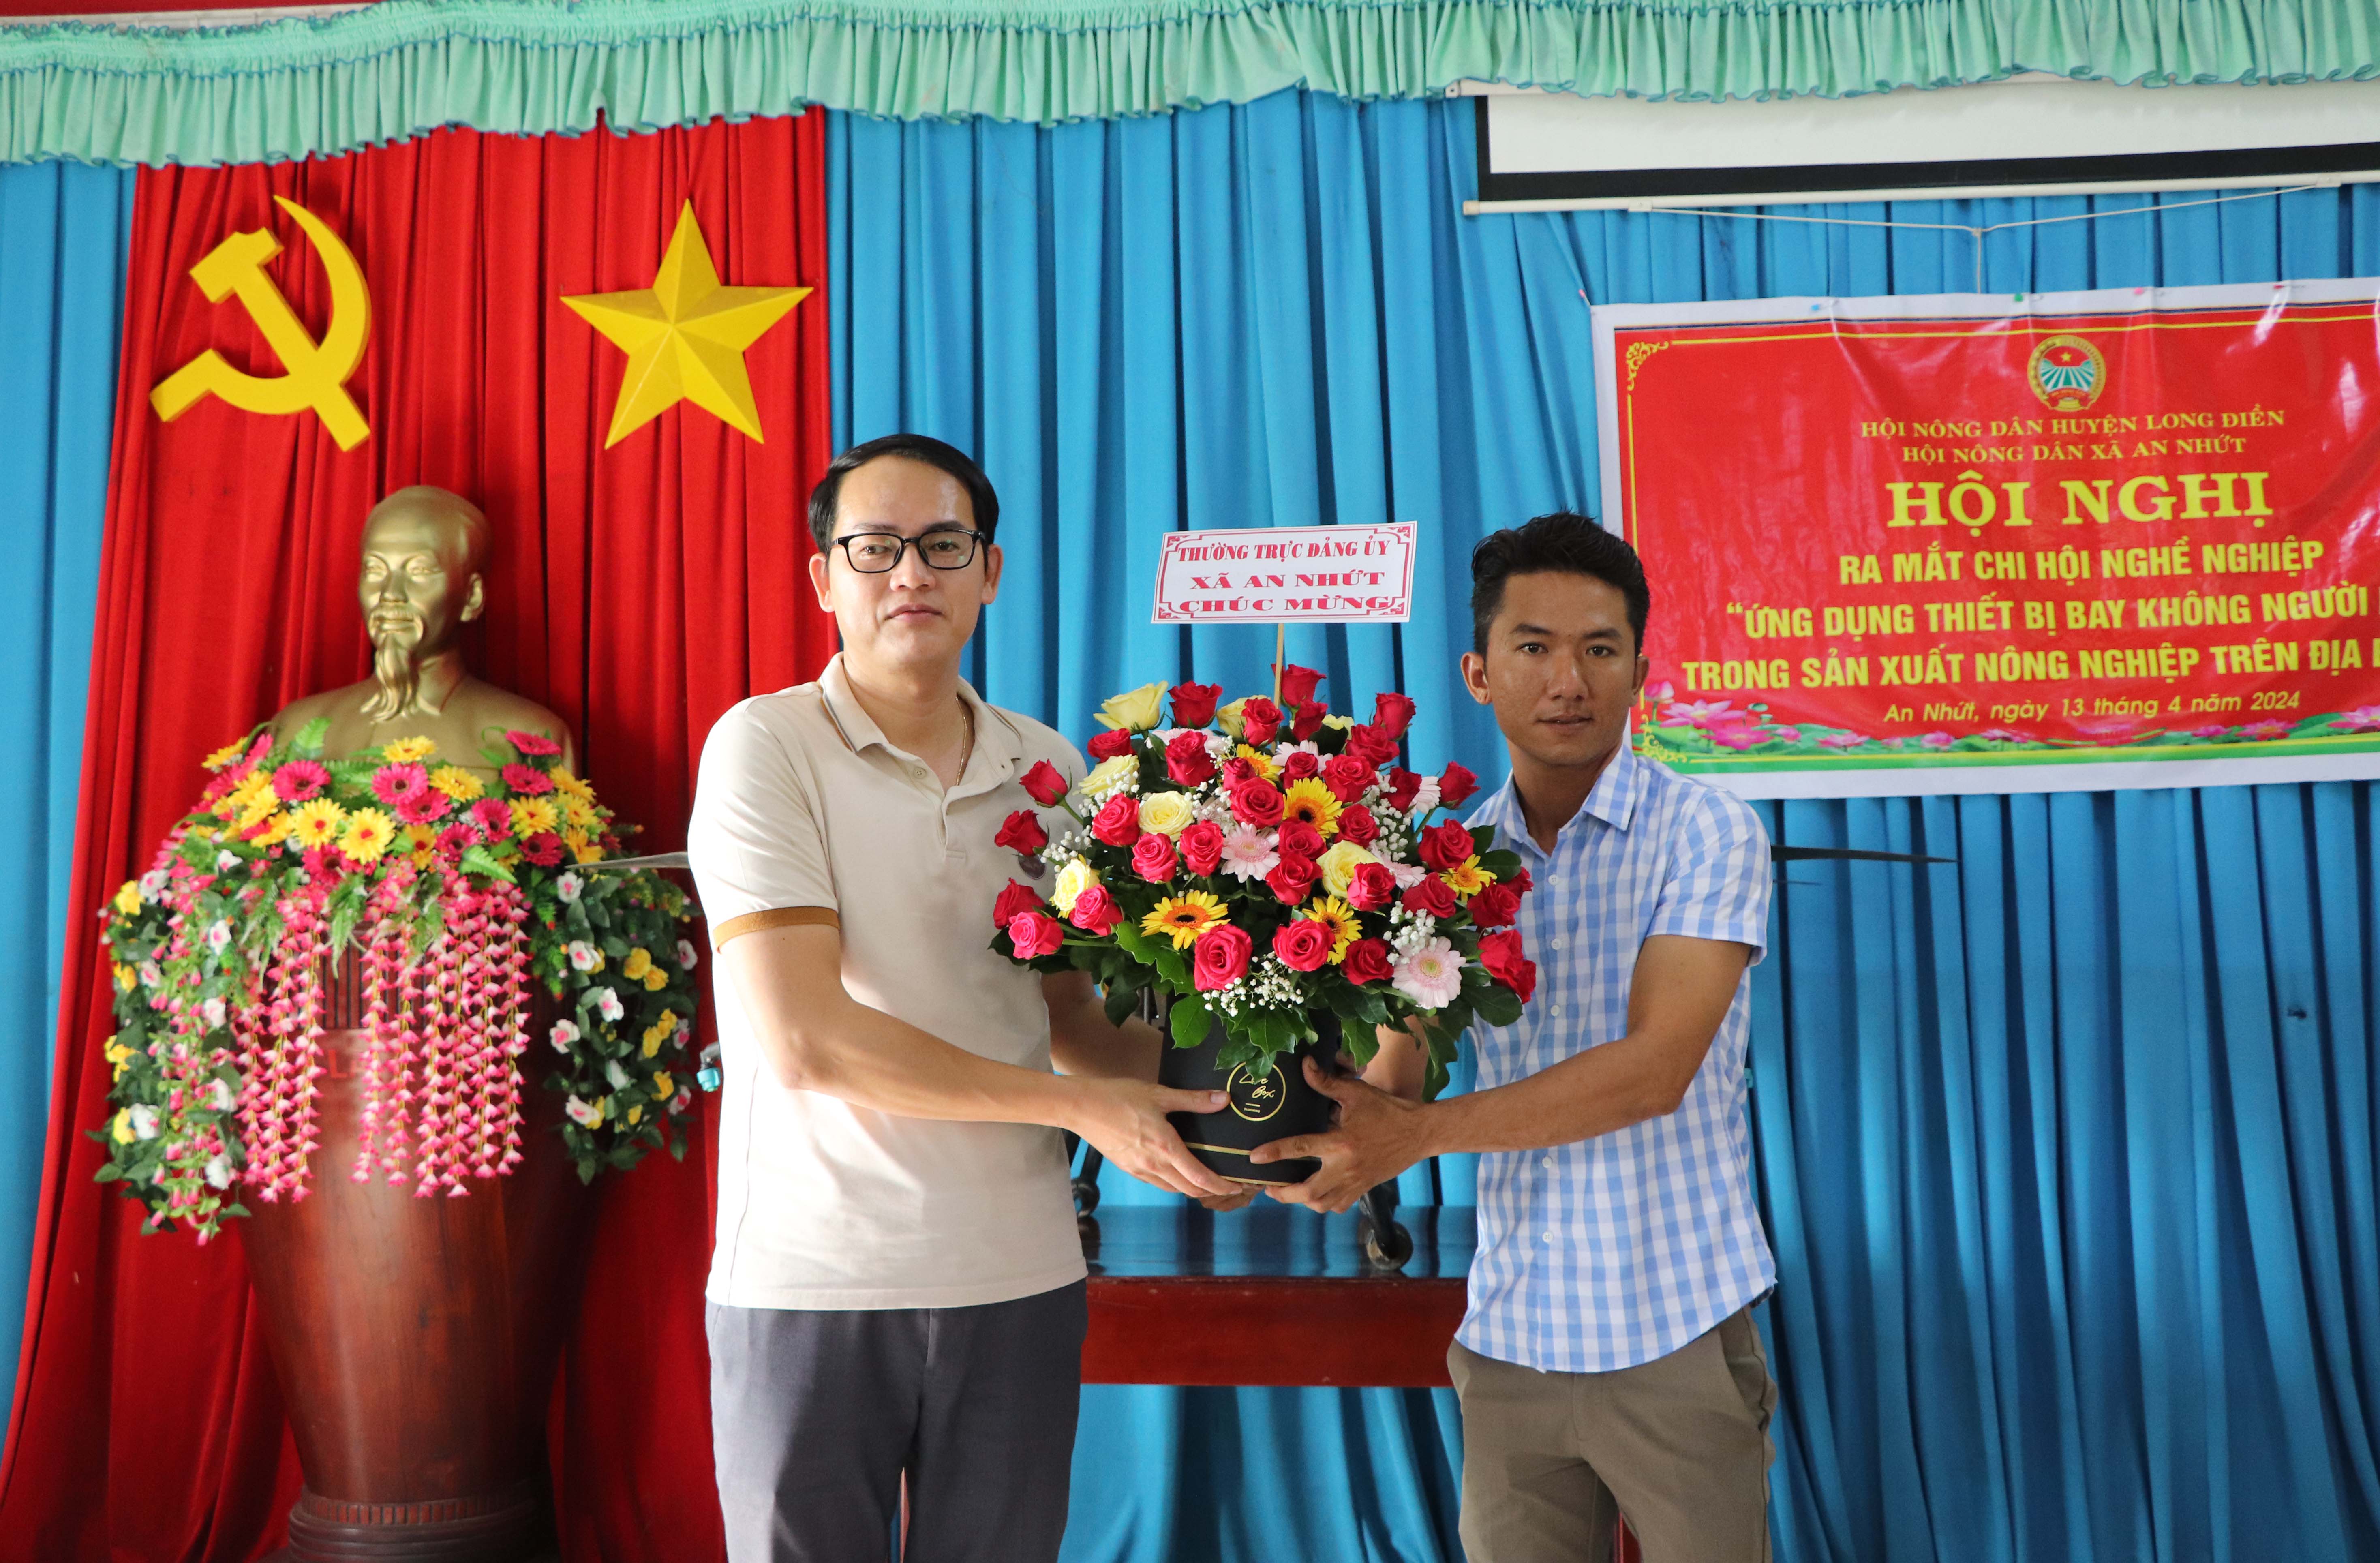 Ông Đỗ Minh Tân (bên trái), Bí thư Đảng ủy xã An Nhứt tặng hoa chúc mừng tại lễ ra mắt Chi hội Nông dân nghề nghiệp.